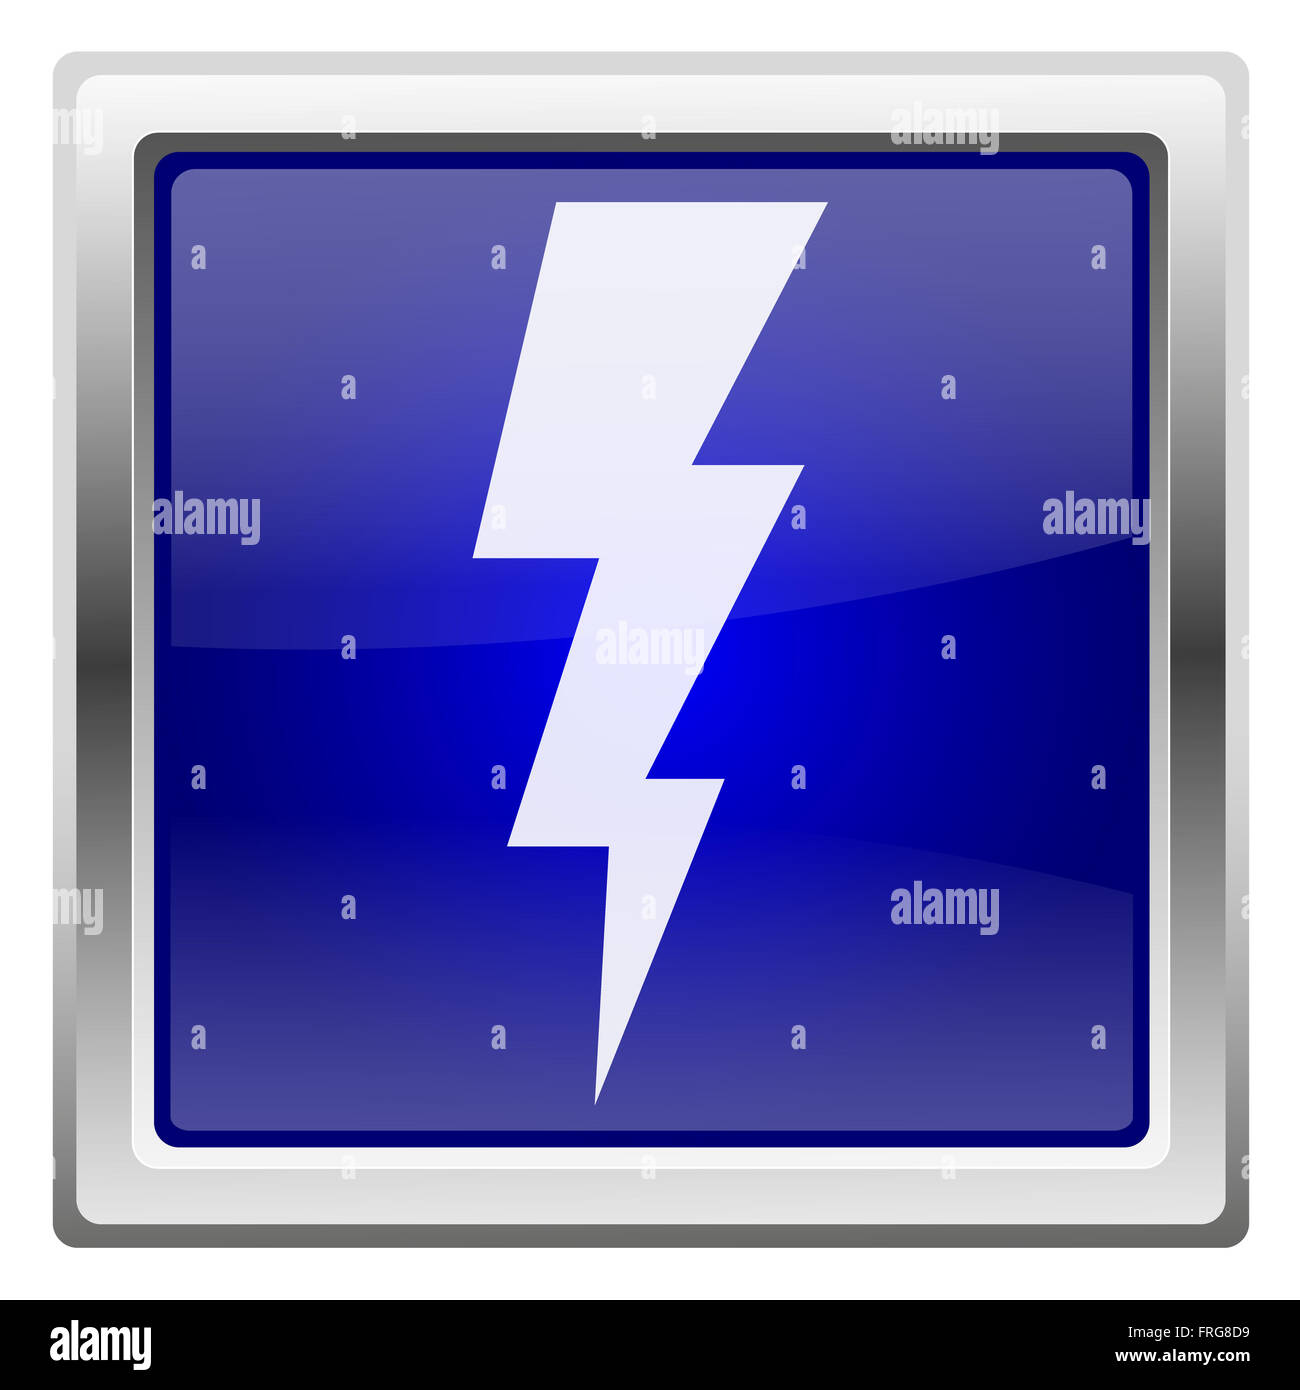 Metallic shiny icon with white design on blue background Stock Photo